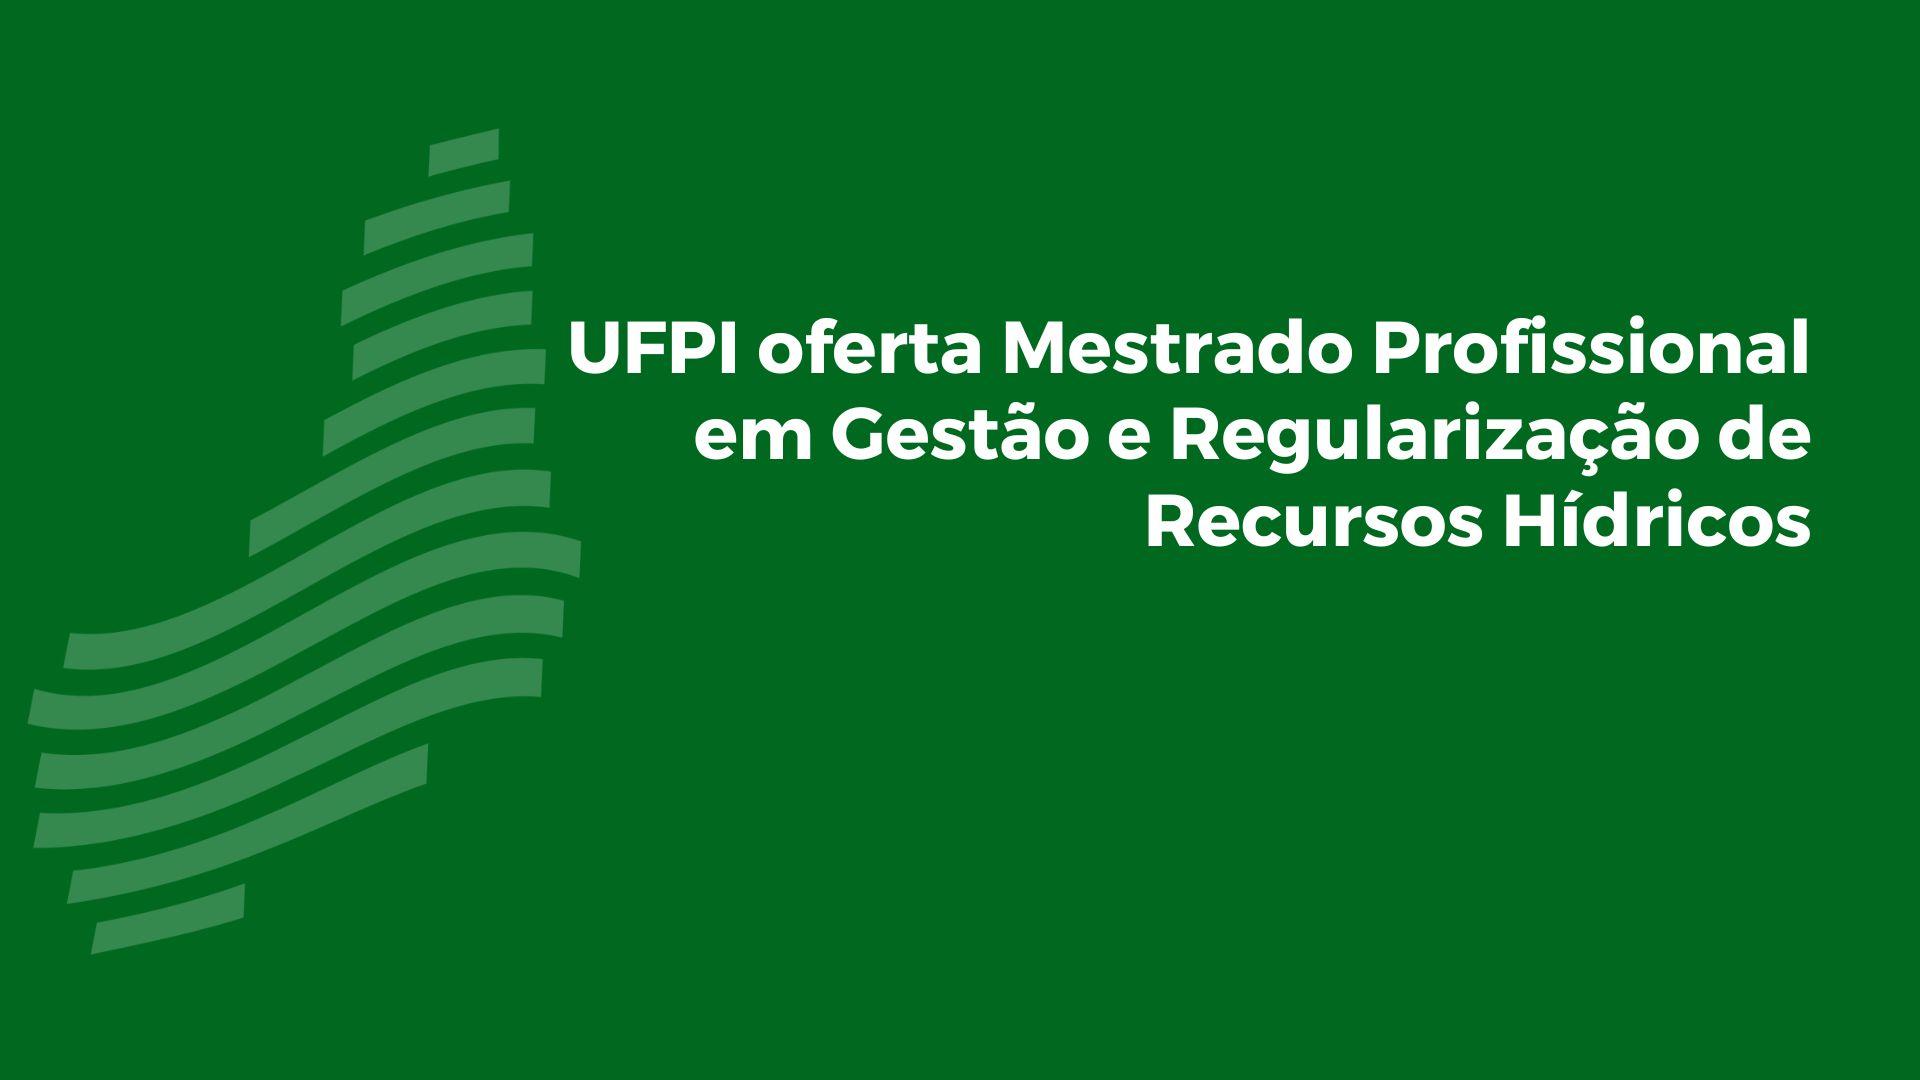 UFPI oferta Mestrado Profissional em Gestão e Regulação de Recursos Hídricos